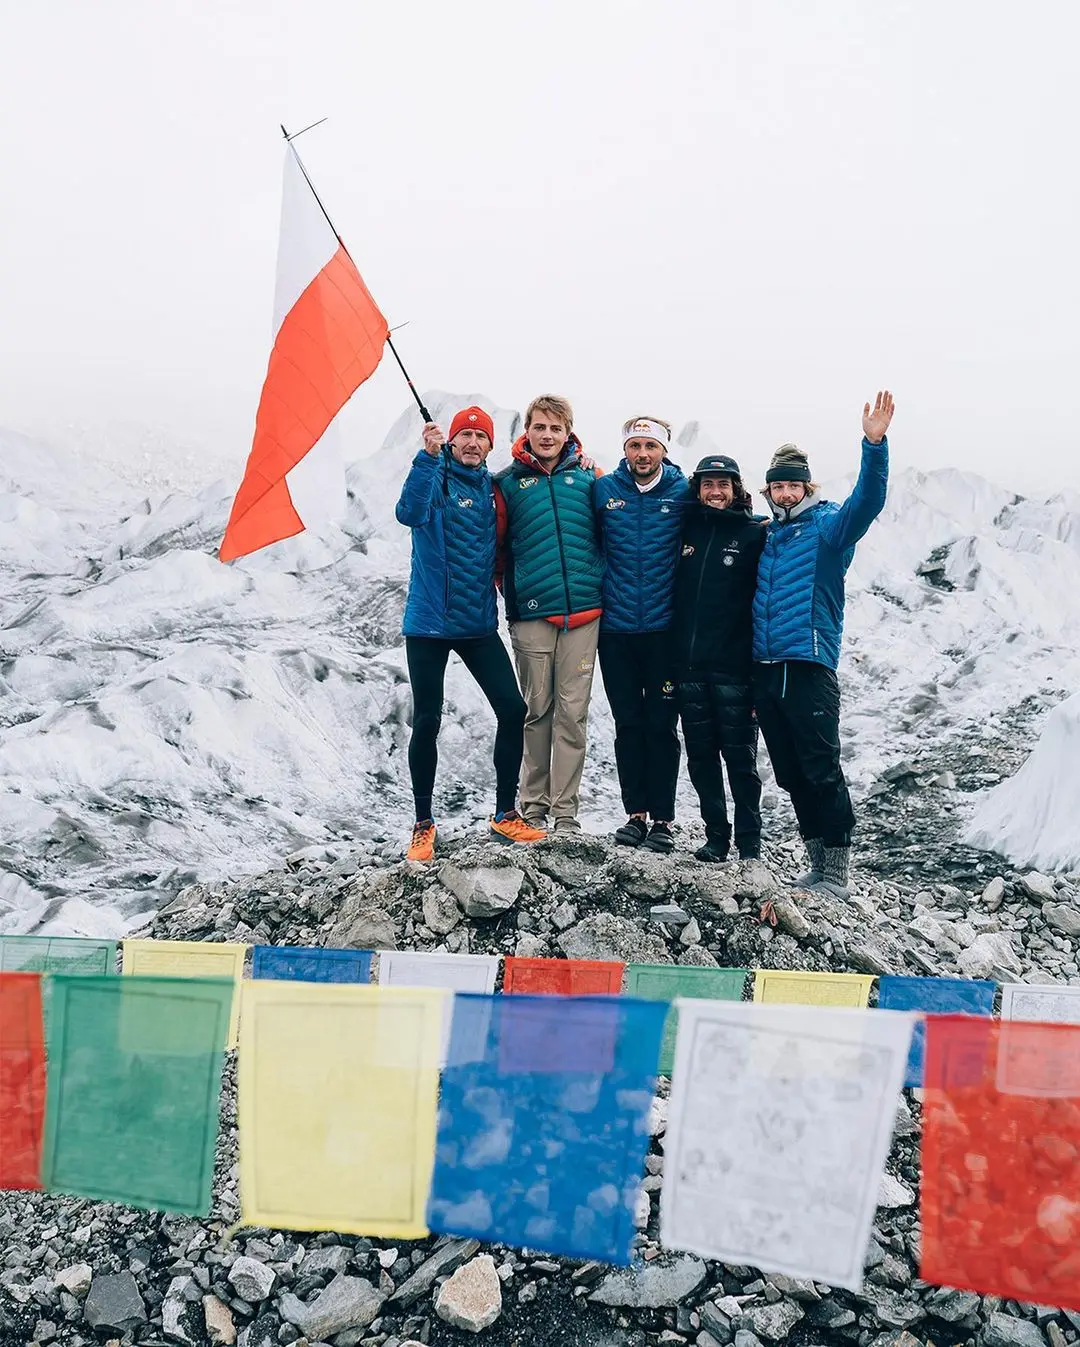 "Вітання з базового табору! Ми єдина команда, яка зараз працює під Еверестом!" Фото Andrzej Bargiel